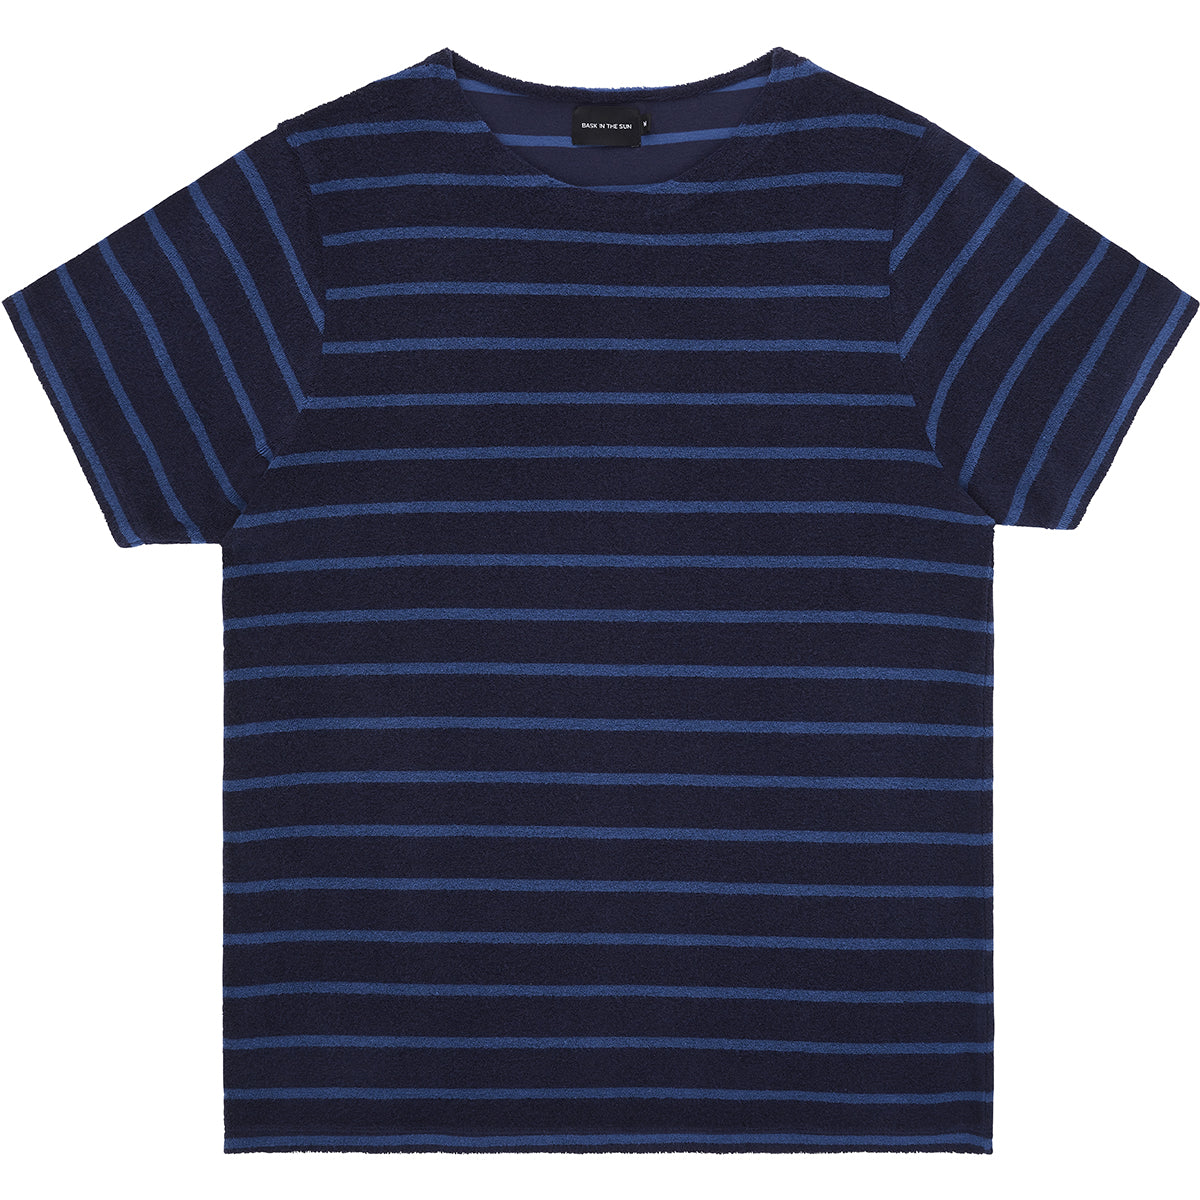 Goxo t-shirt navy - Bask in the sun